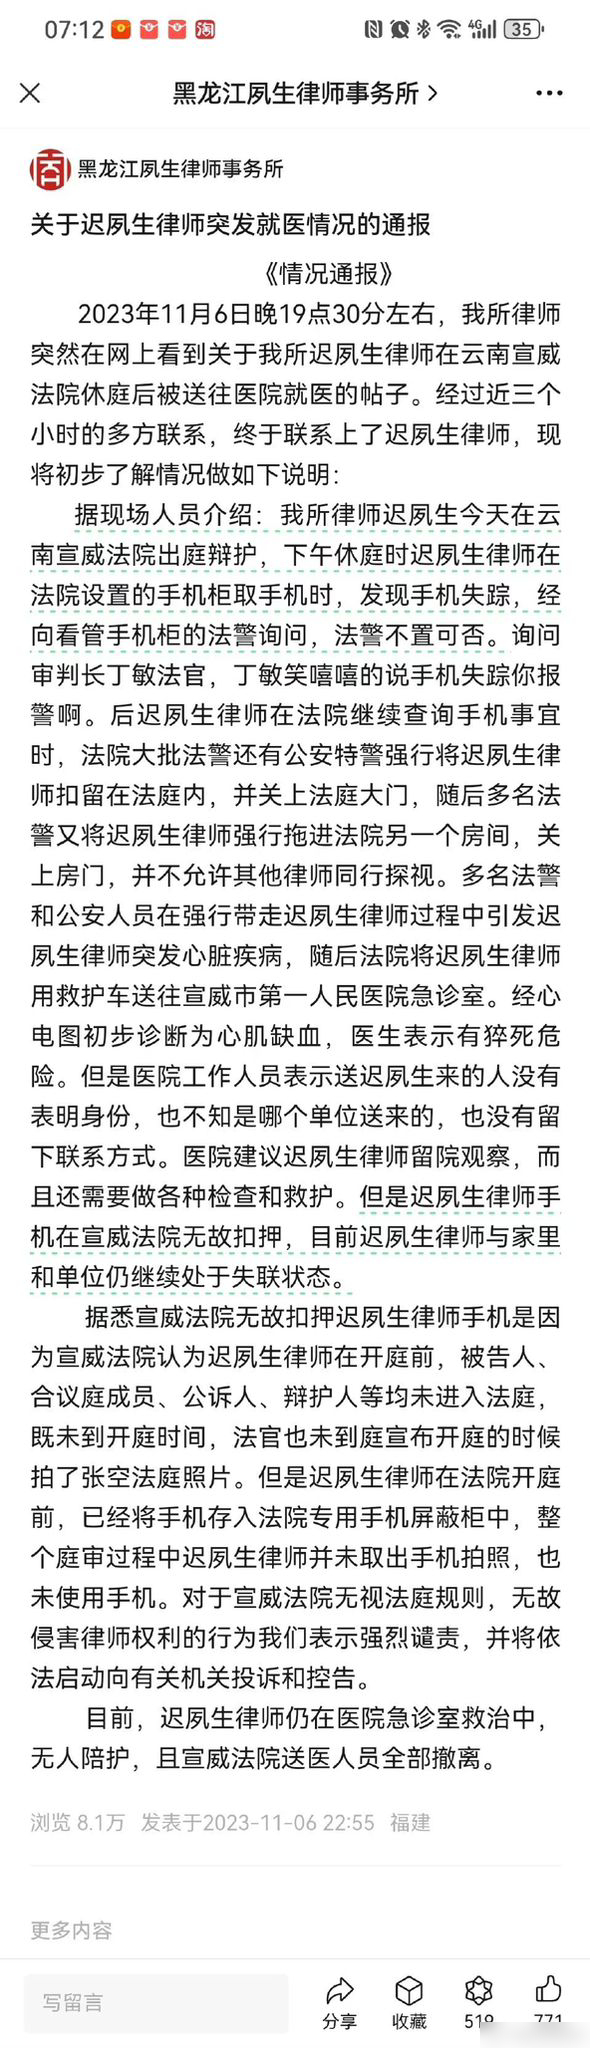 黑龙江夙生律师事务所发通报，指会就事件追究责任。微博